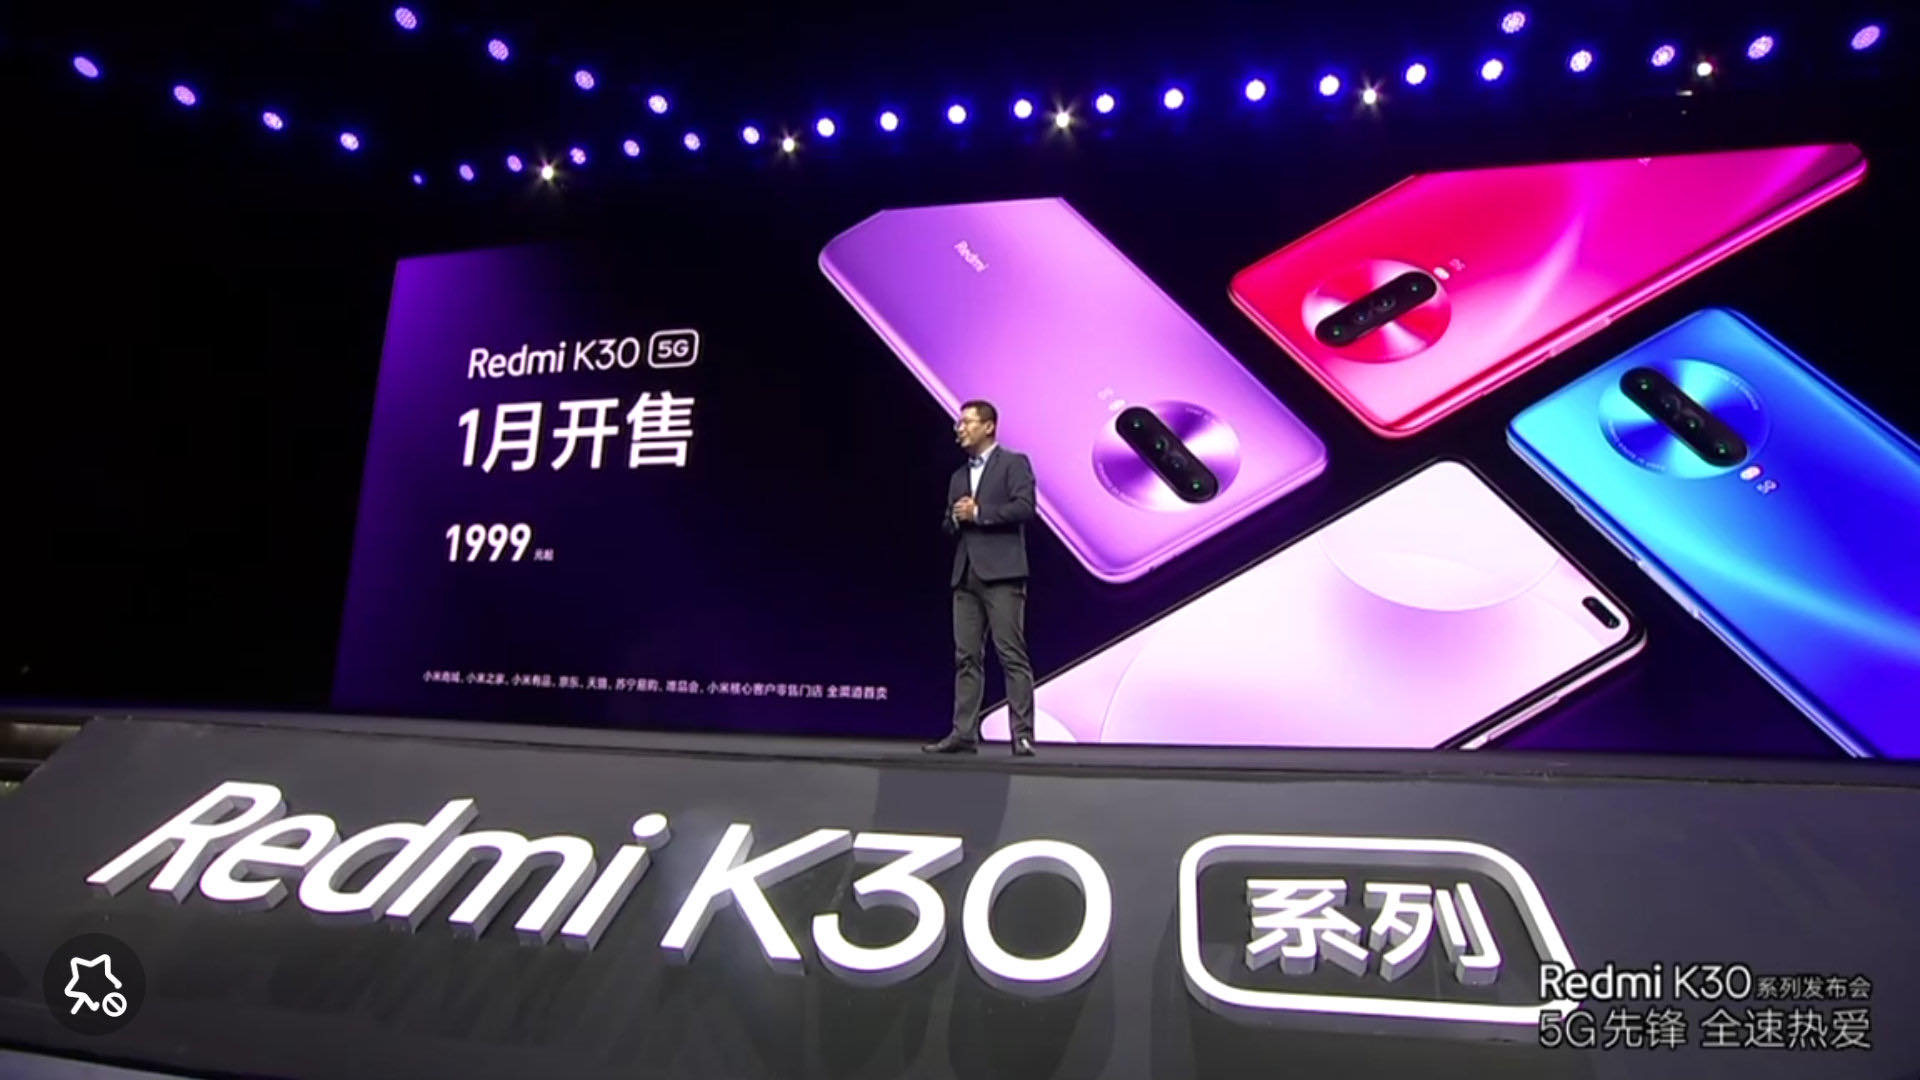 Redmi K30 5G chính
thức ra mắt: Chip Snapdragon 765, màn hình 6,67 inch 120Hz,
giá bán từ 280 USD